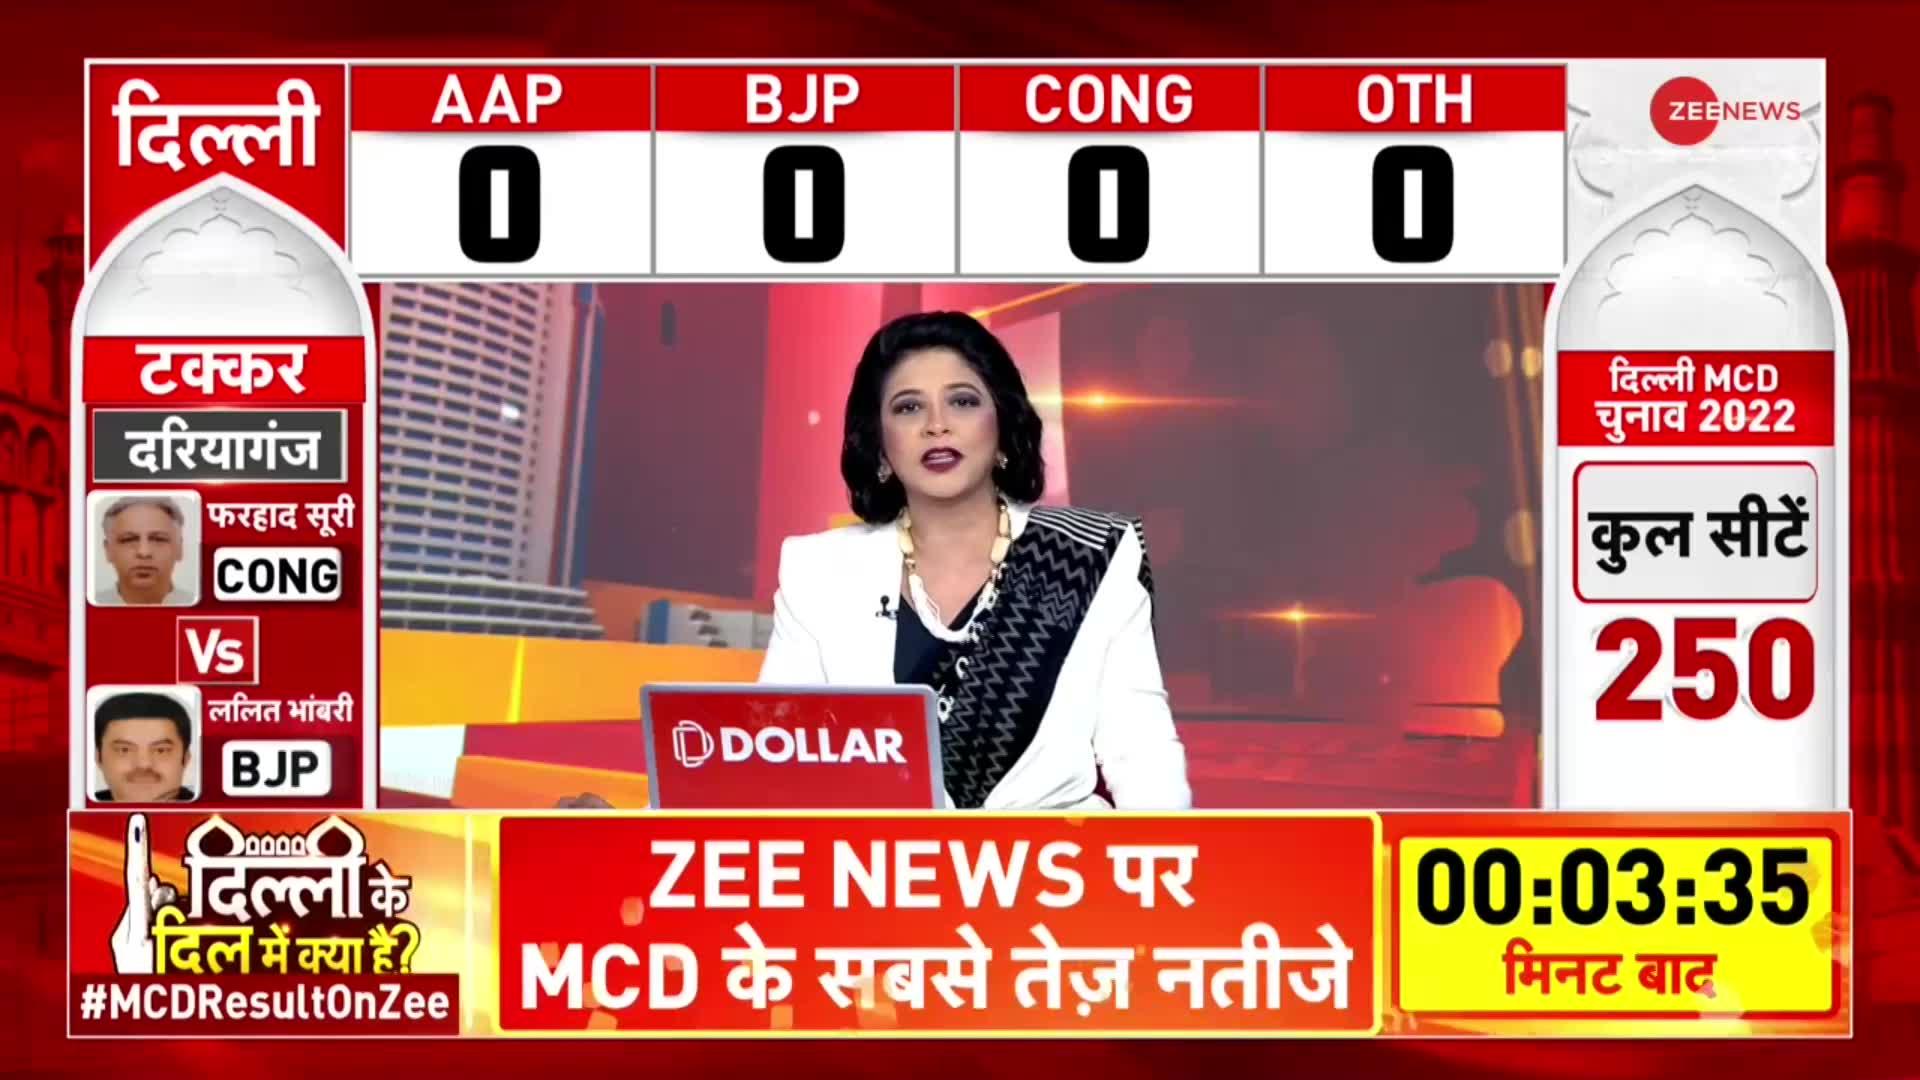 Delhi MCD Election: दिल्ली नगर निगम चुनाव की मतगणना शुरू, जानिए शुरूआती रुझान में कौन आगे कौन पीछे?